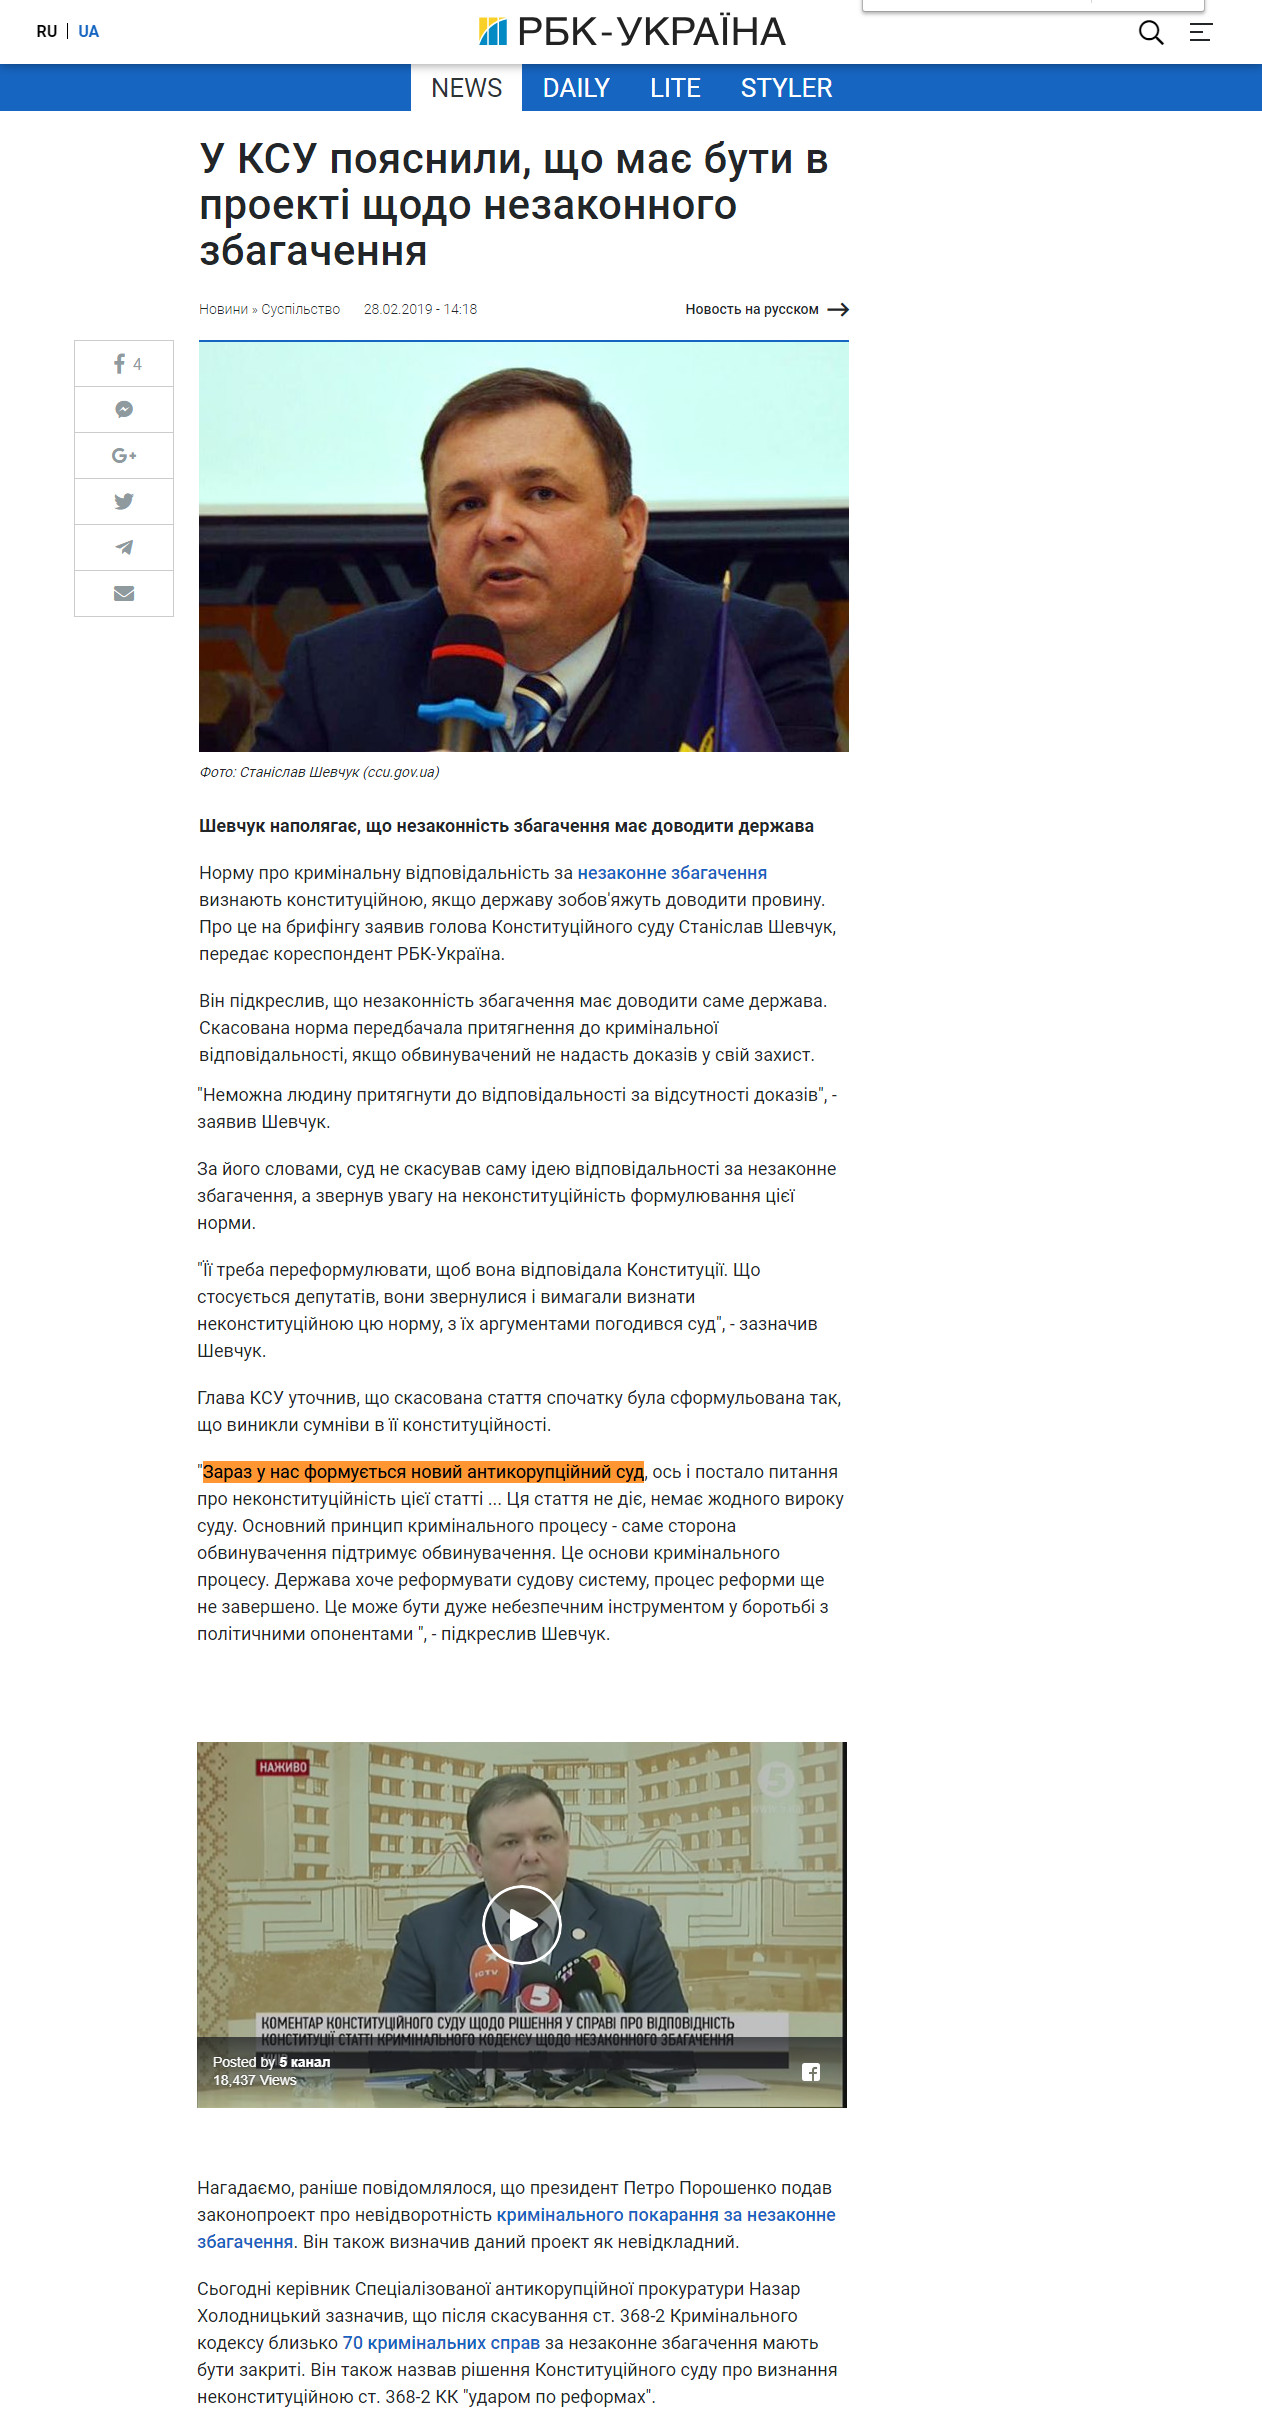 https://www.rbc.ua/ukr/news/ksu-poyasnili-dolzhno-proekte-nezakonnomu-1551356255.html